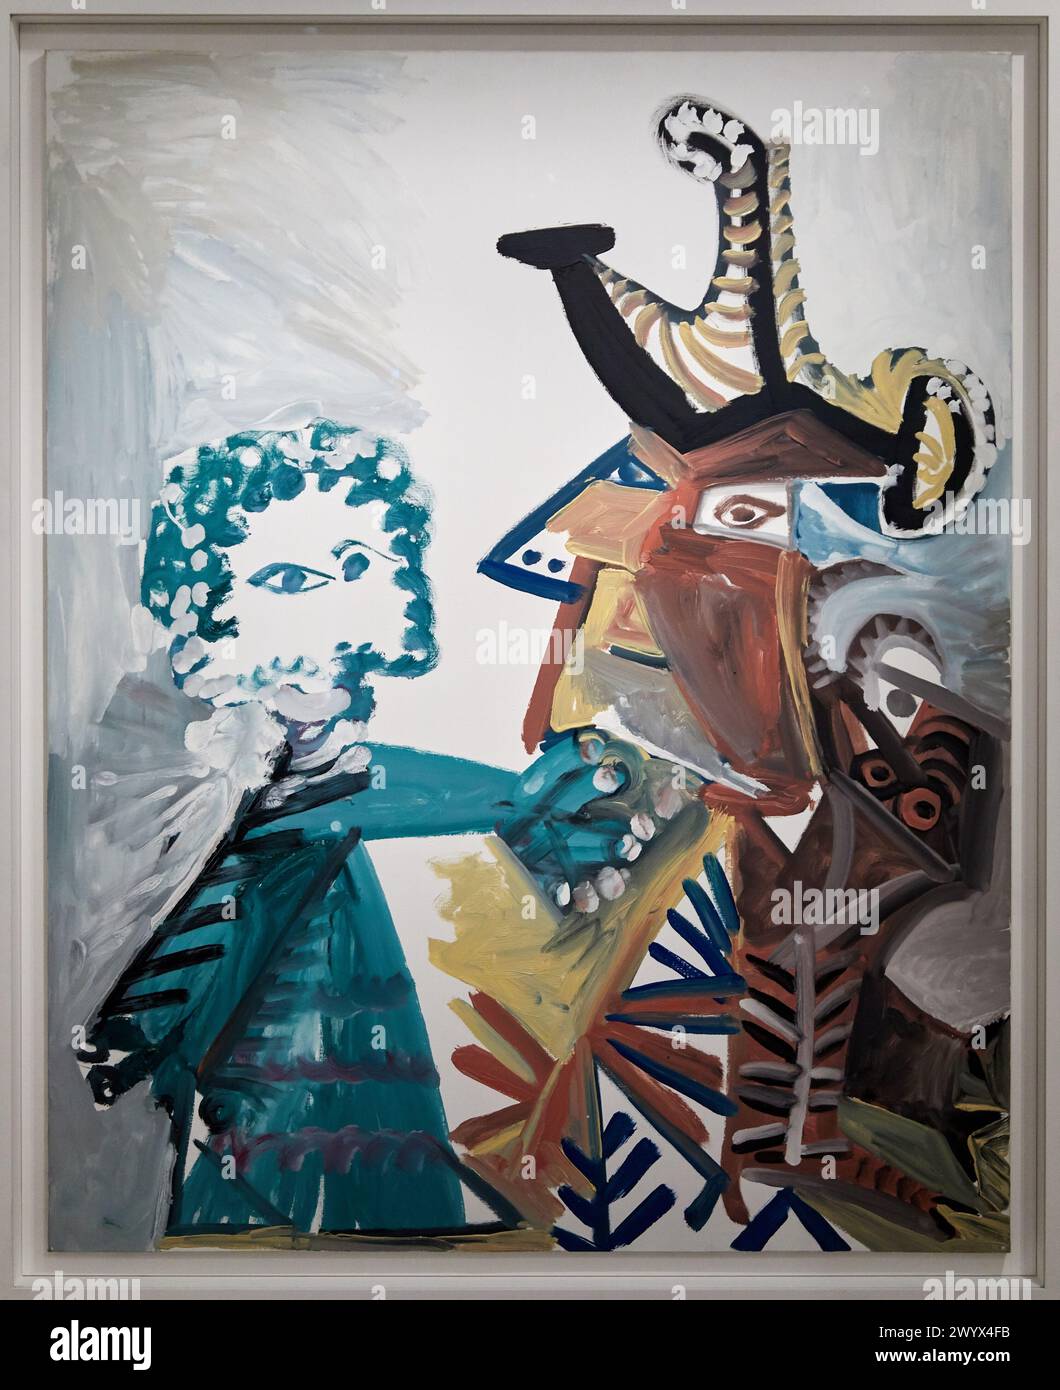 Mousquetaire et enfant, 1972, Pablo Picasso, 1881-1973, Musée de lArmée, Paris, France. Stock Photo